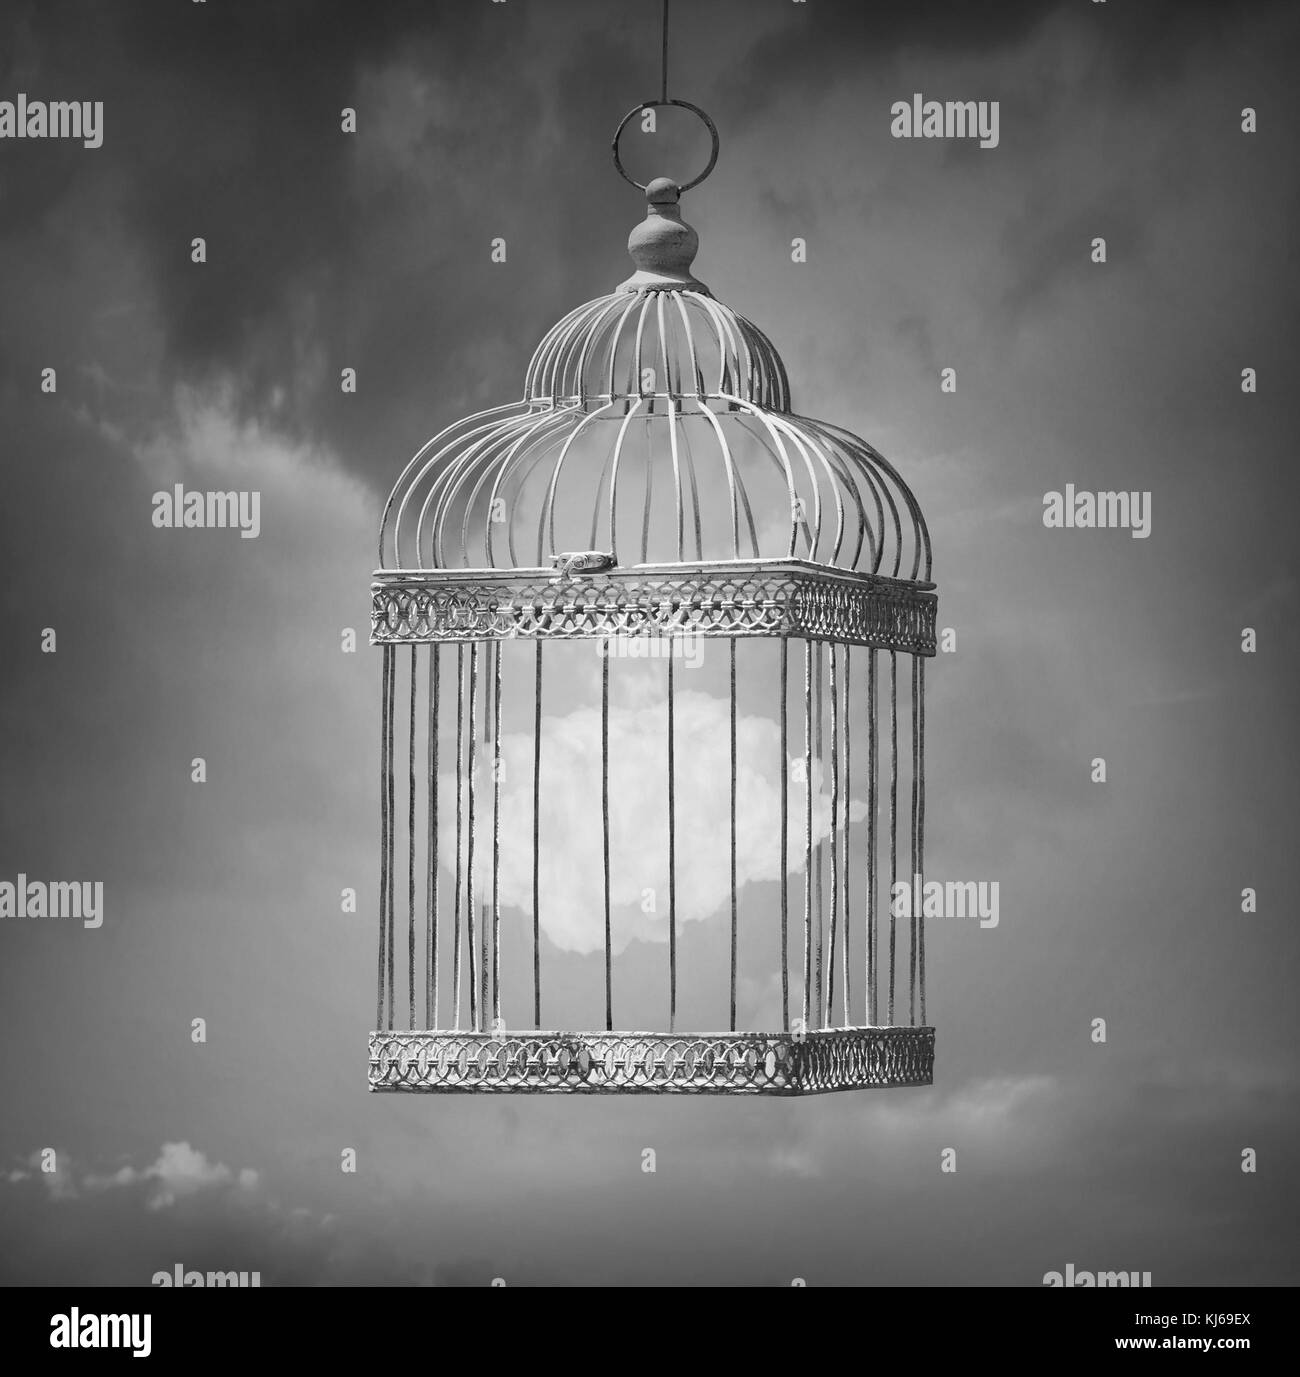 Image de rêve en noir et blanc qui représentent un nuage dans une cage  Photo Stock - Alamy